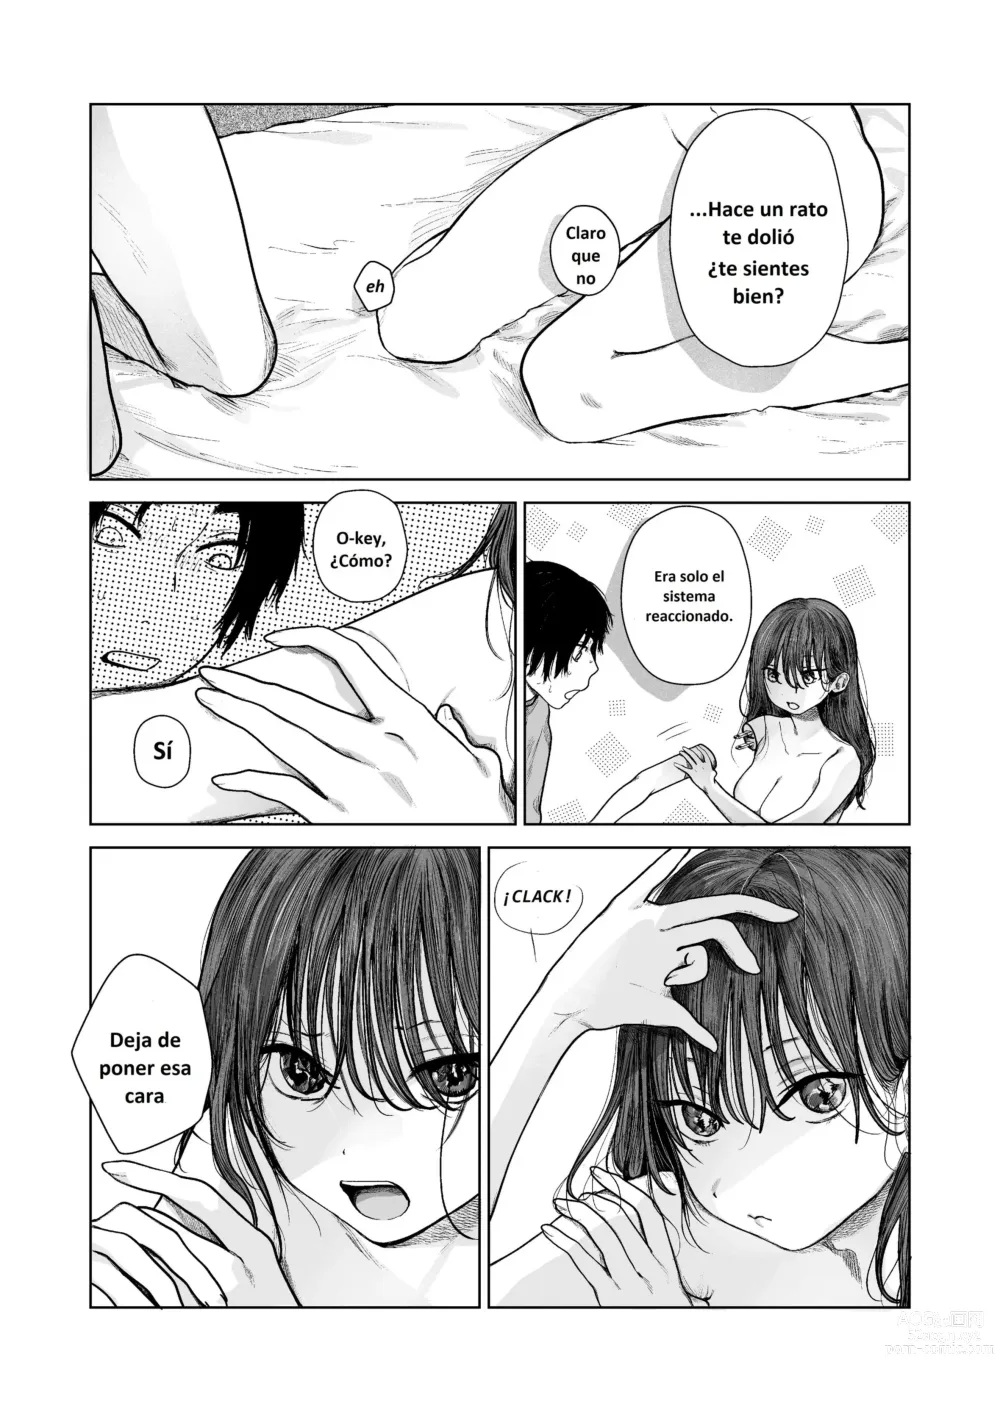 Page 7 of manga Ella, la Robodeli